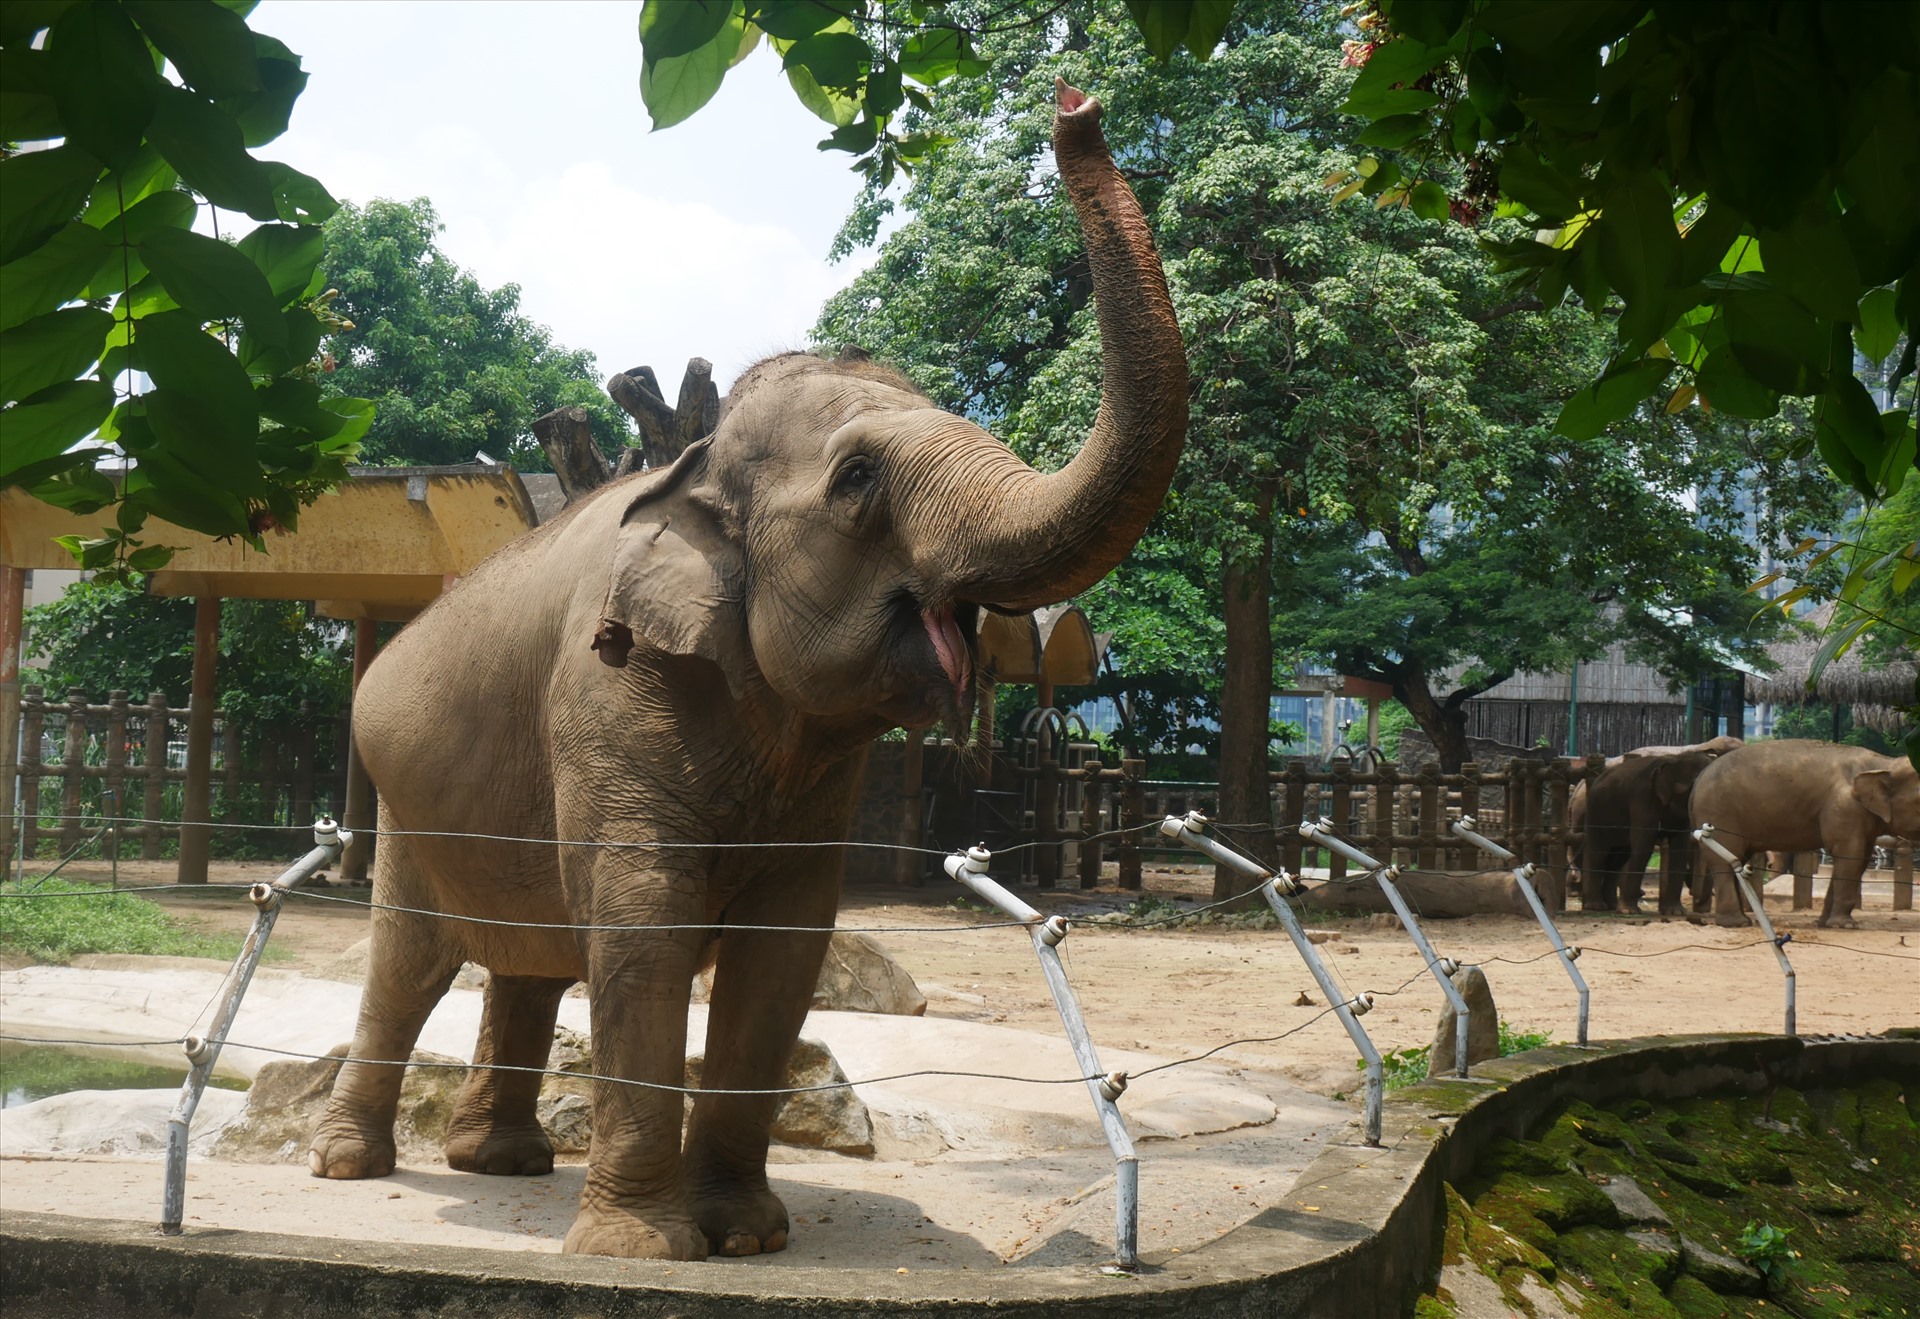 Sau nhiều ngày tạm đóng cửa vắng vẻ du khách, nay có nhiều du khách tới tham quan,  các chú voi liên tục có nhiều động tác tỏ ra vui vẻ khi có du khách quay trở lại.